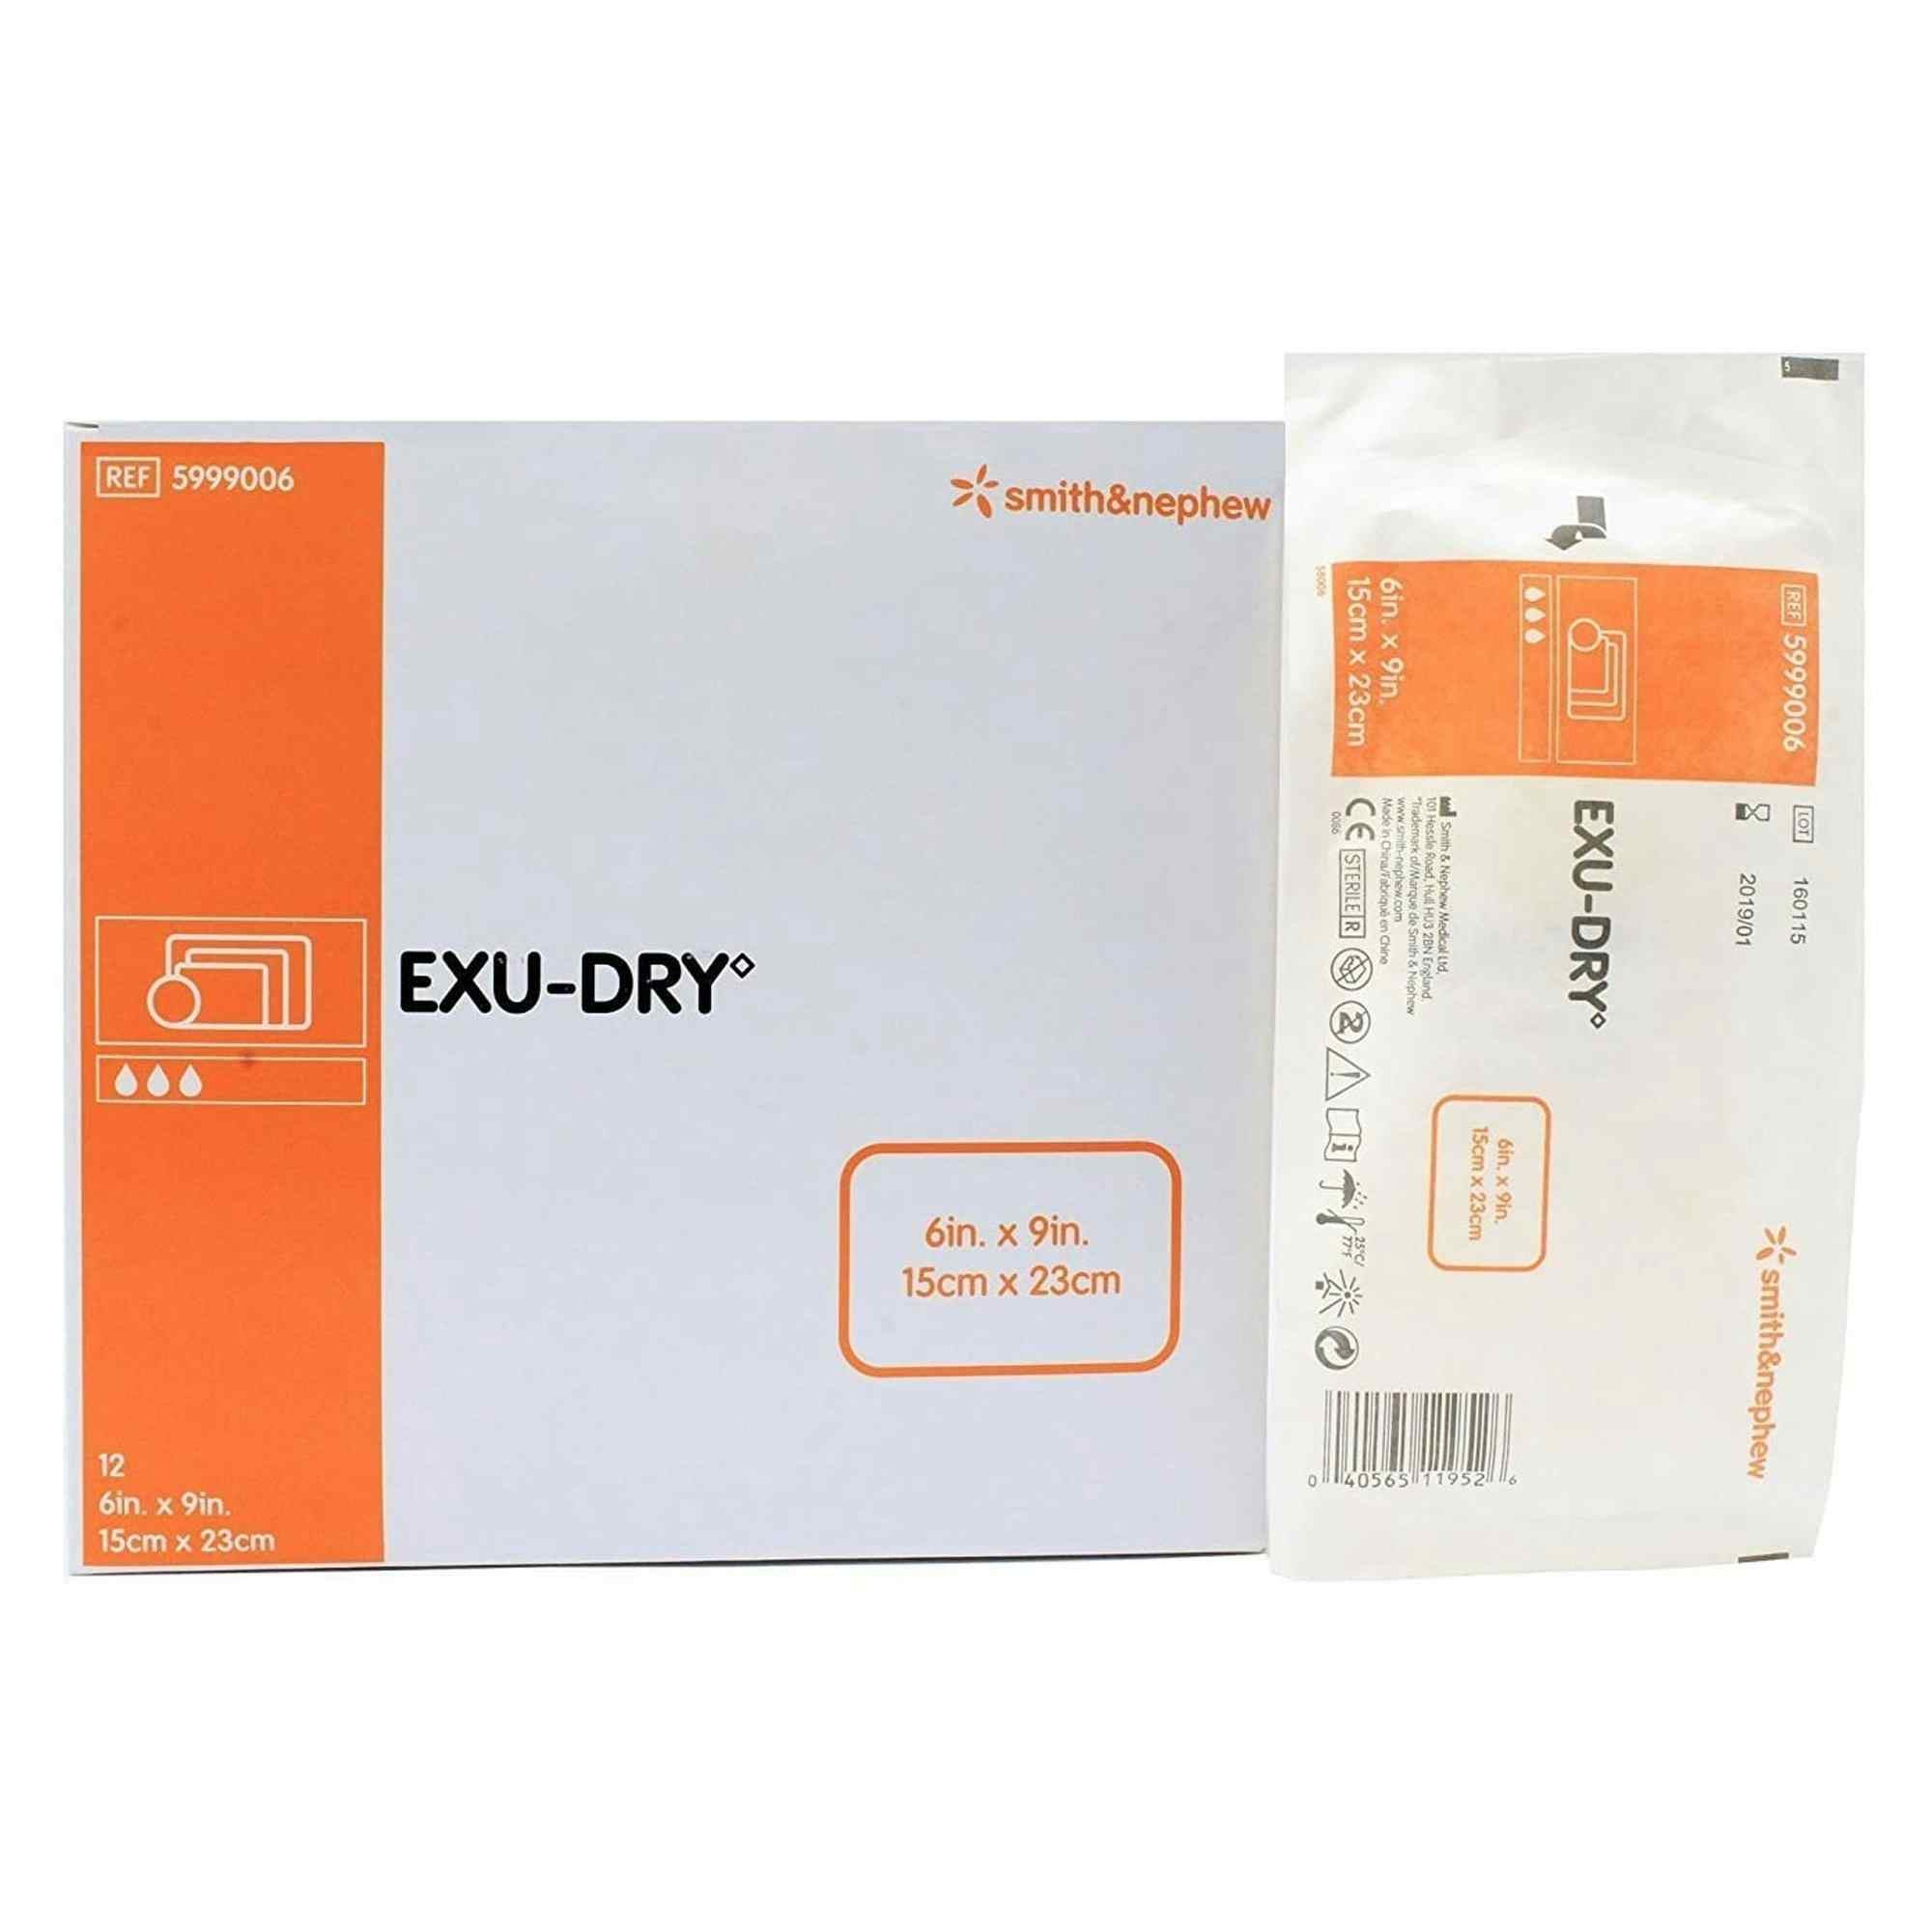 Smith & Nephew Exu-Dry Anti-Shear Absorbent Dressing, 6 X 9", 5999006, Box of 12